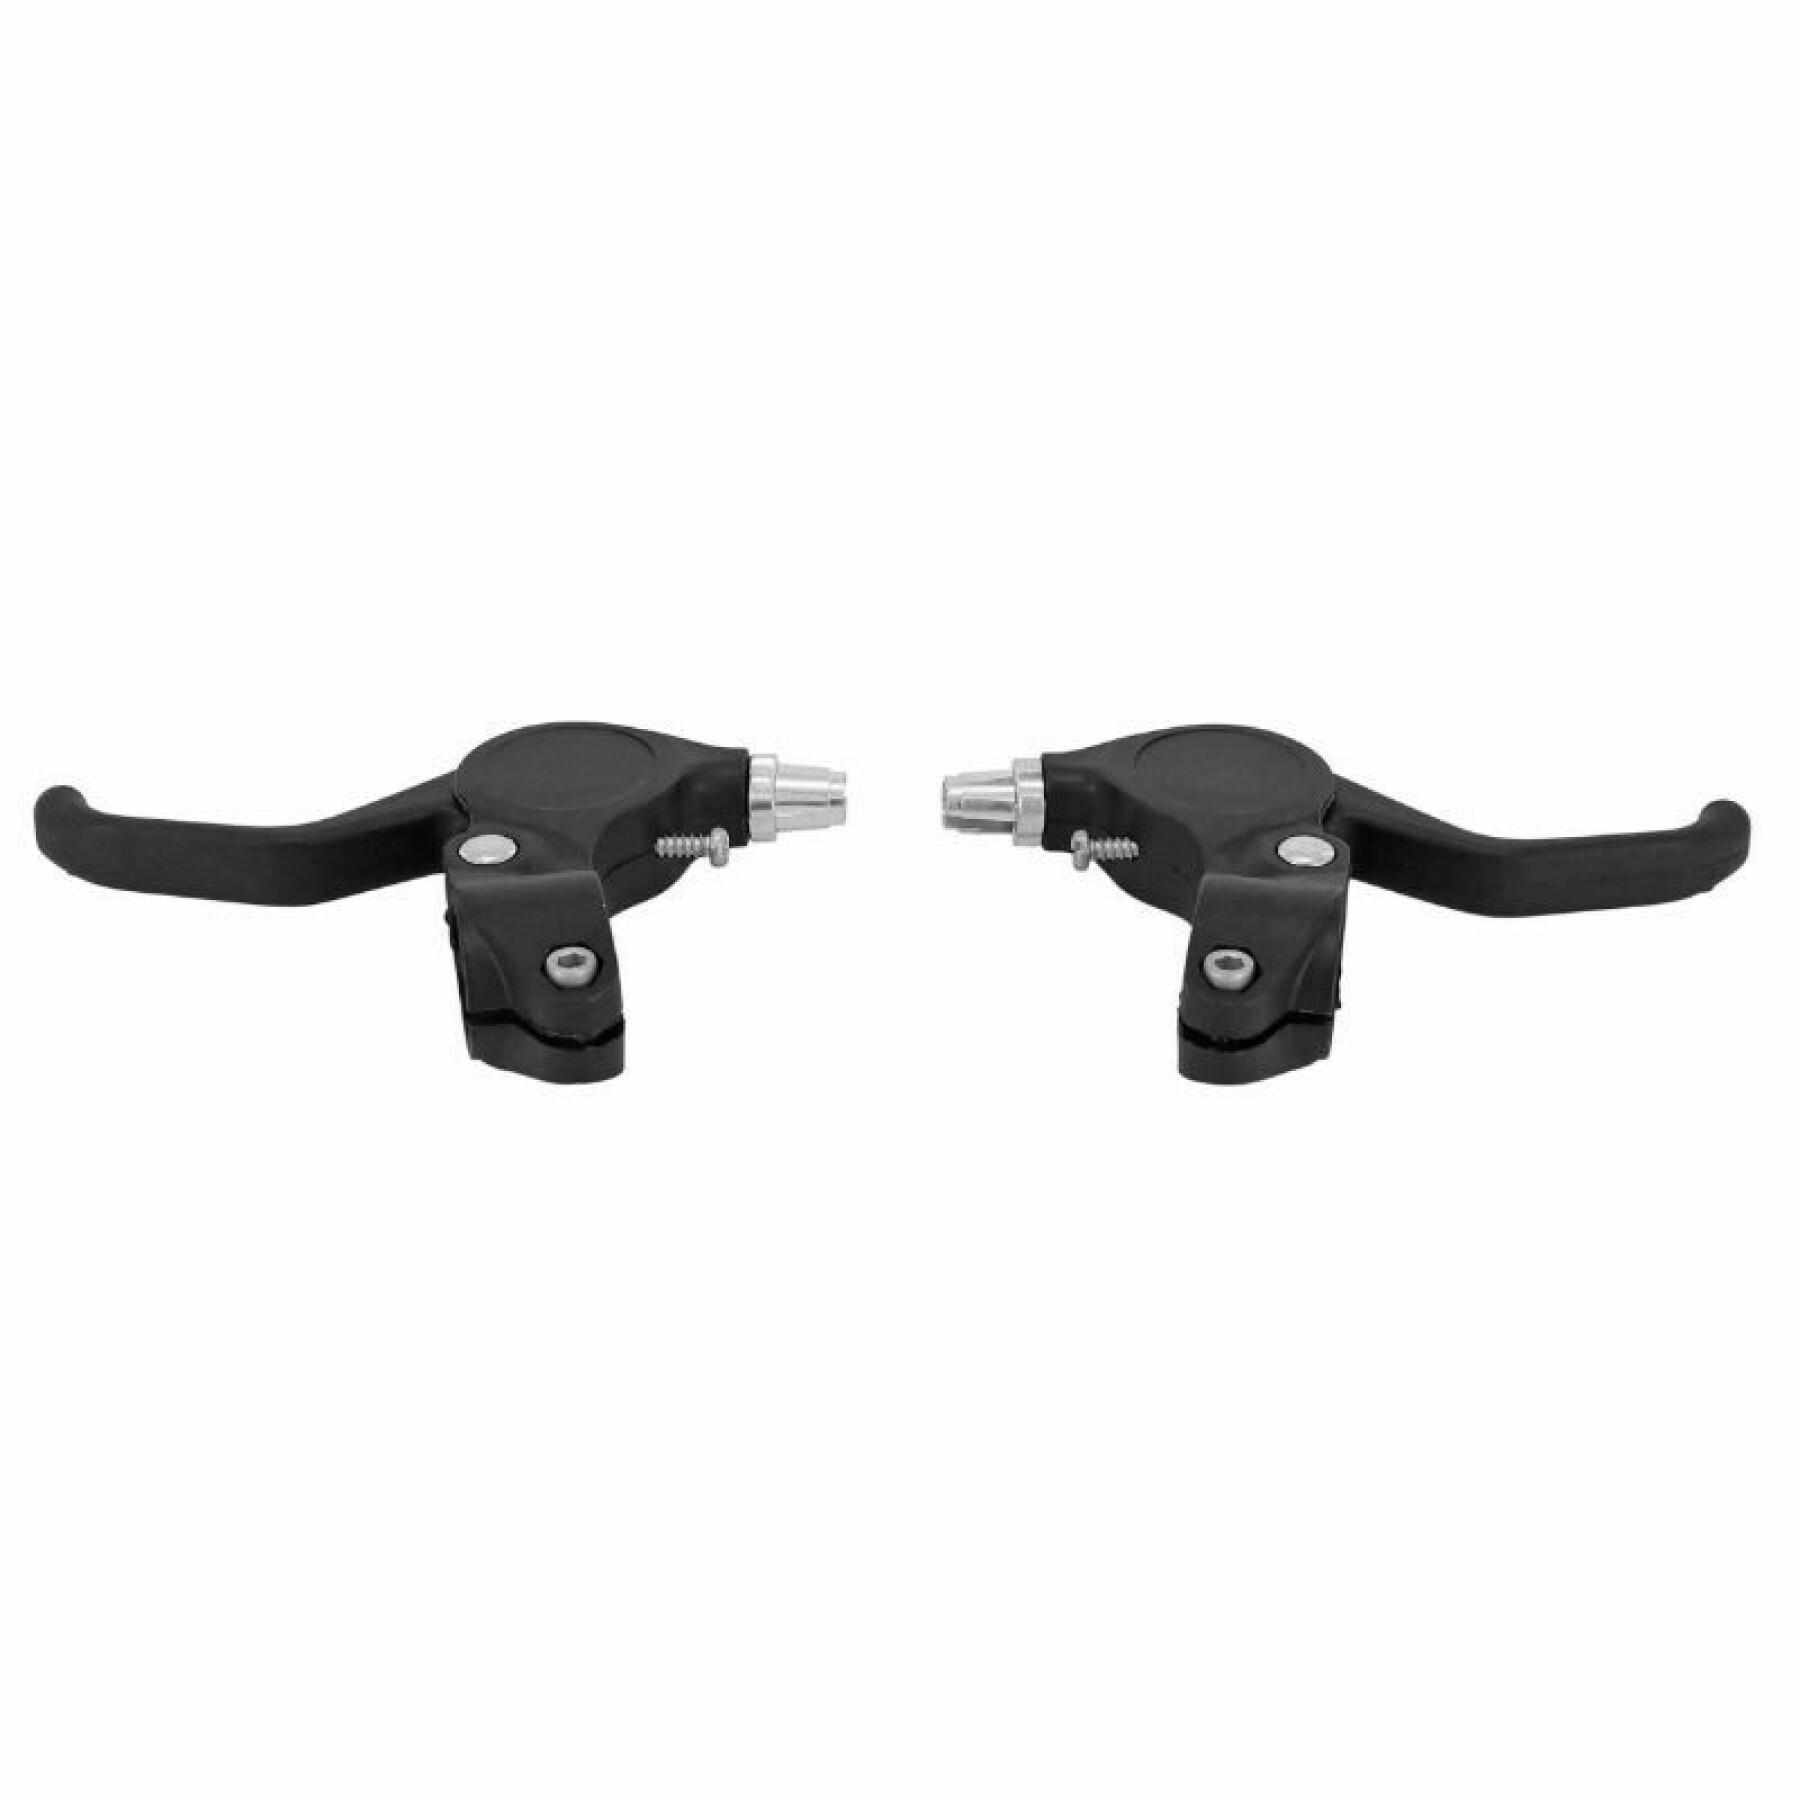 Pair of resin brake levers for children Newton V-Brake